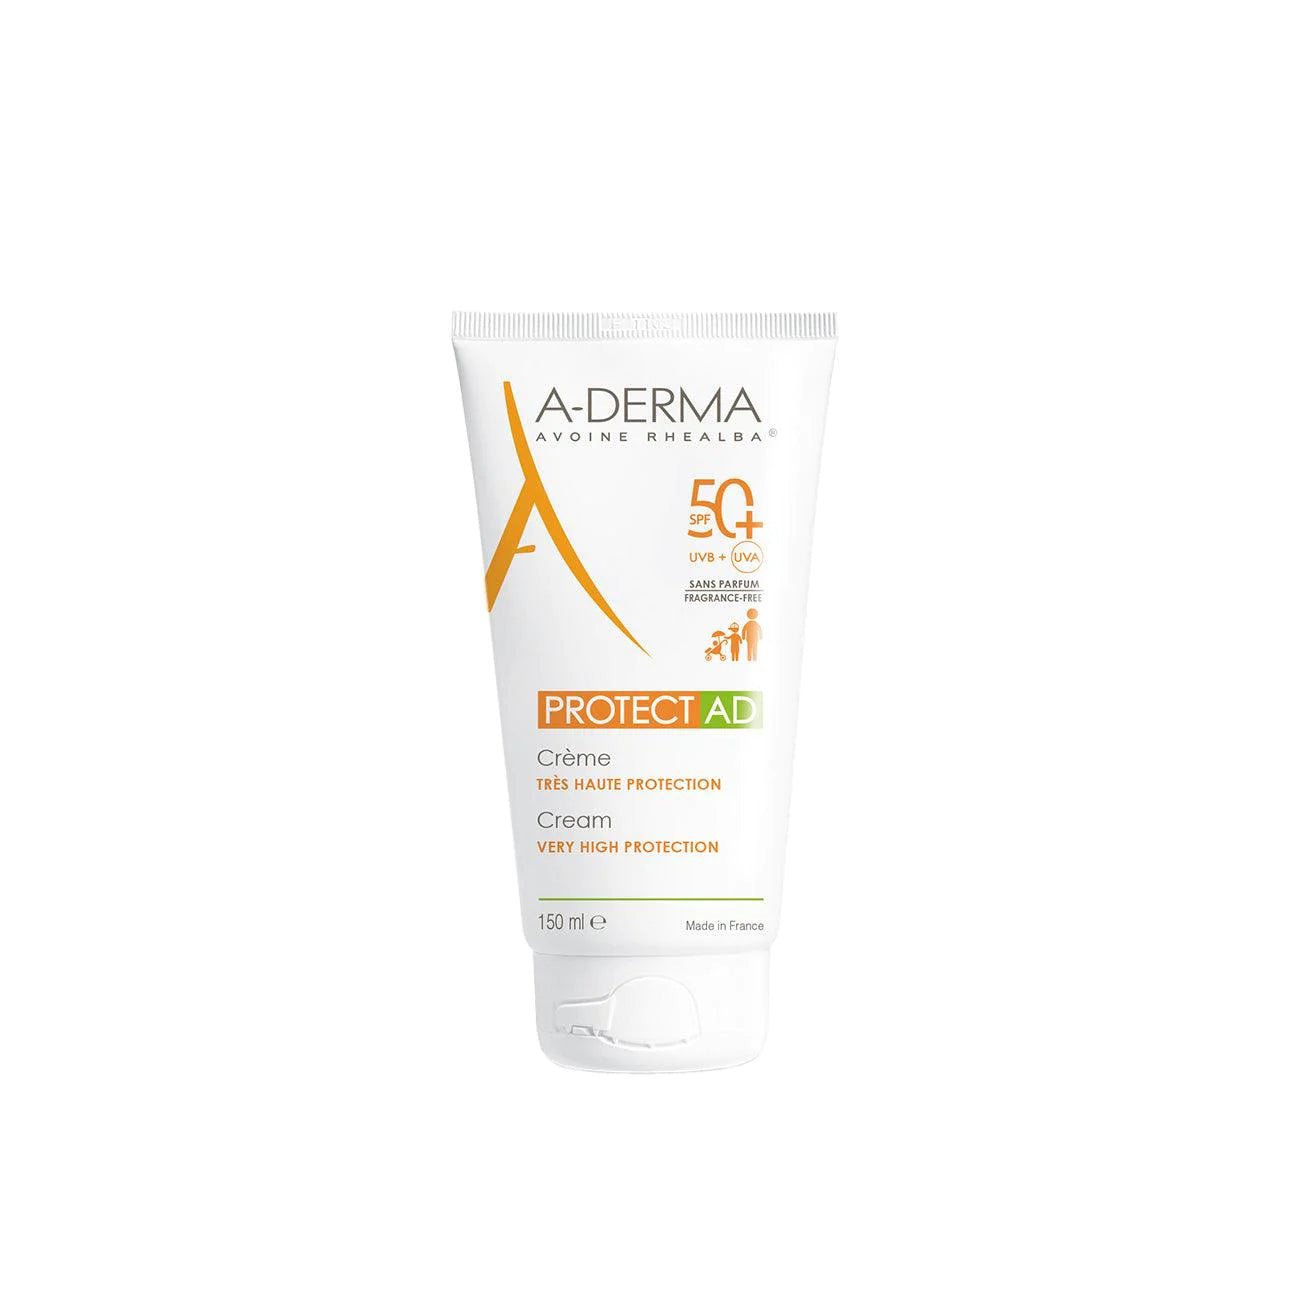 Protect AD Sunscreen SPF50+ - MazenOnline